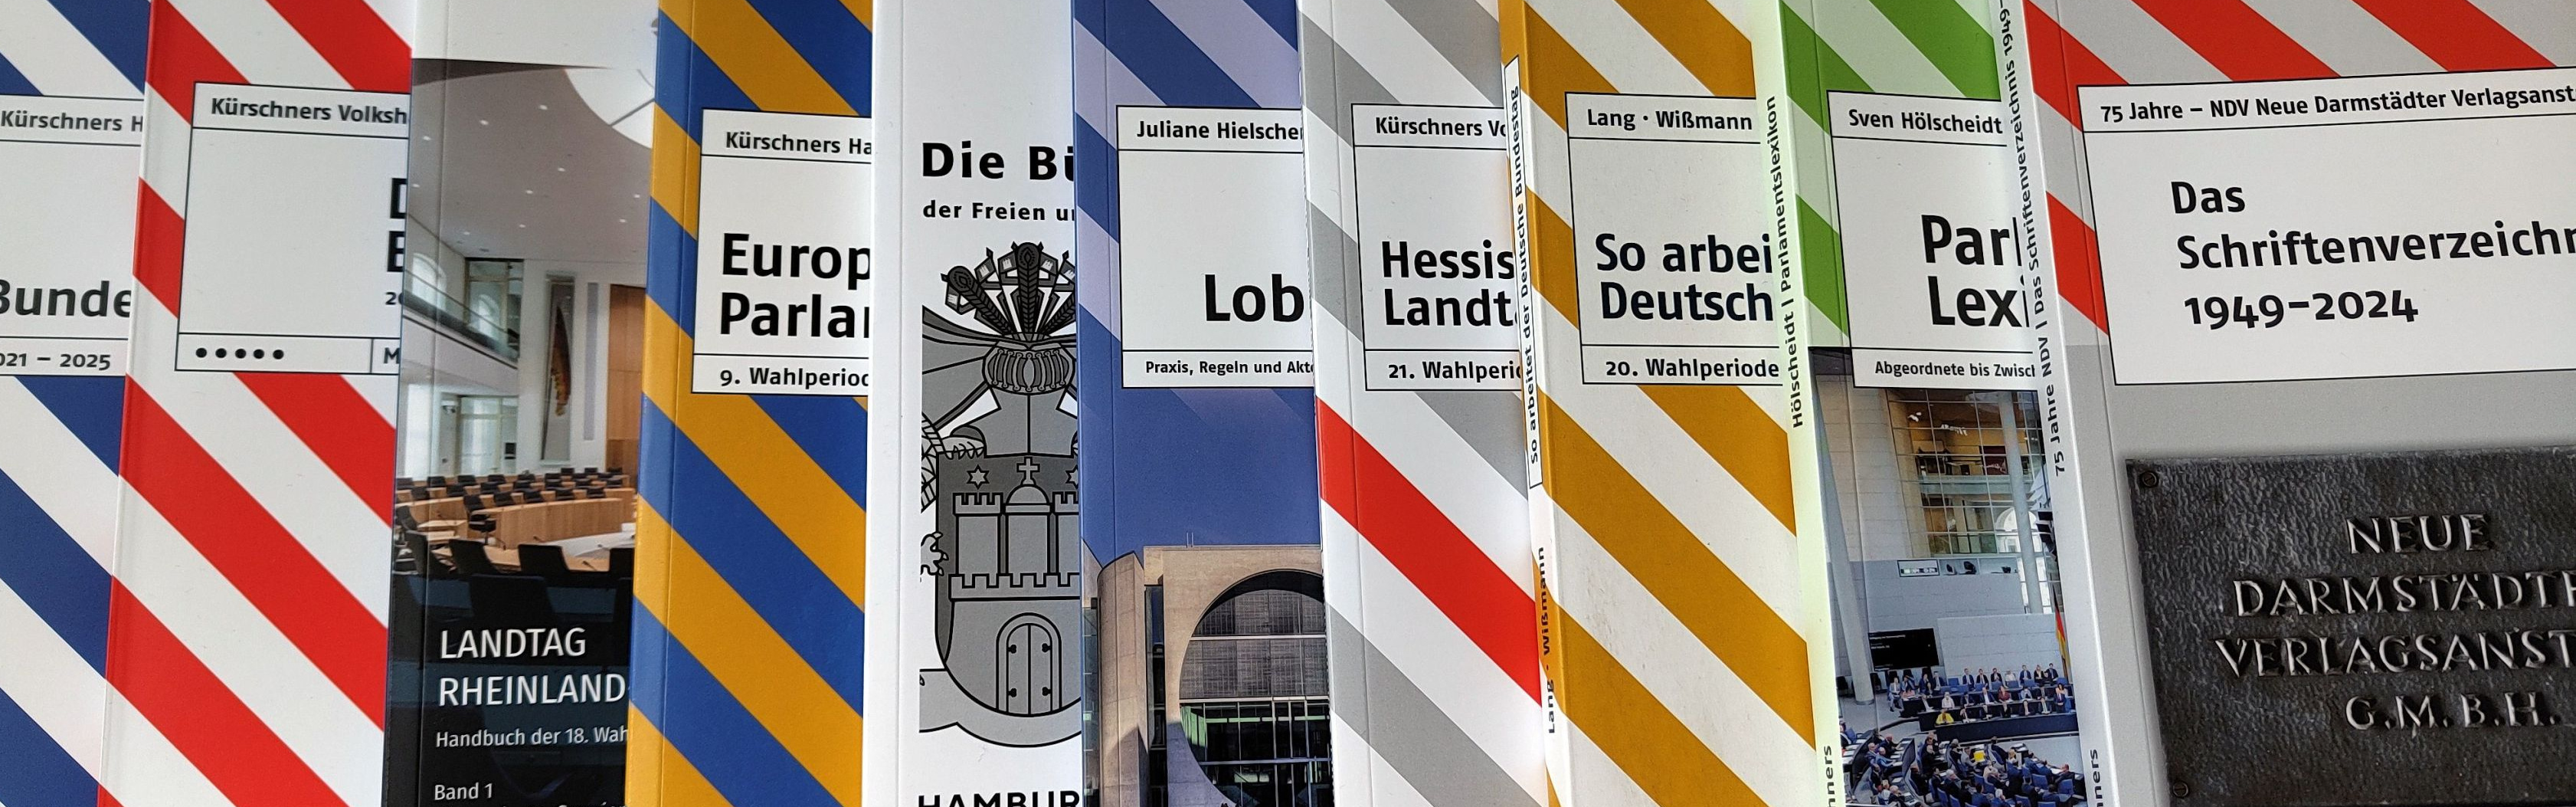 Mehrere bunt gestreifte Bücher aus dem Verlag NDV Kürschners Politikkontakte.